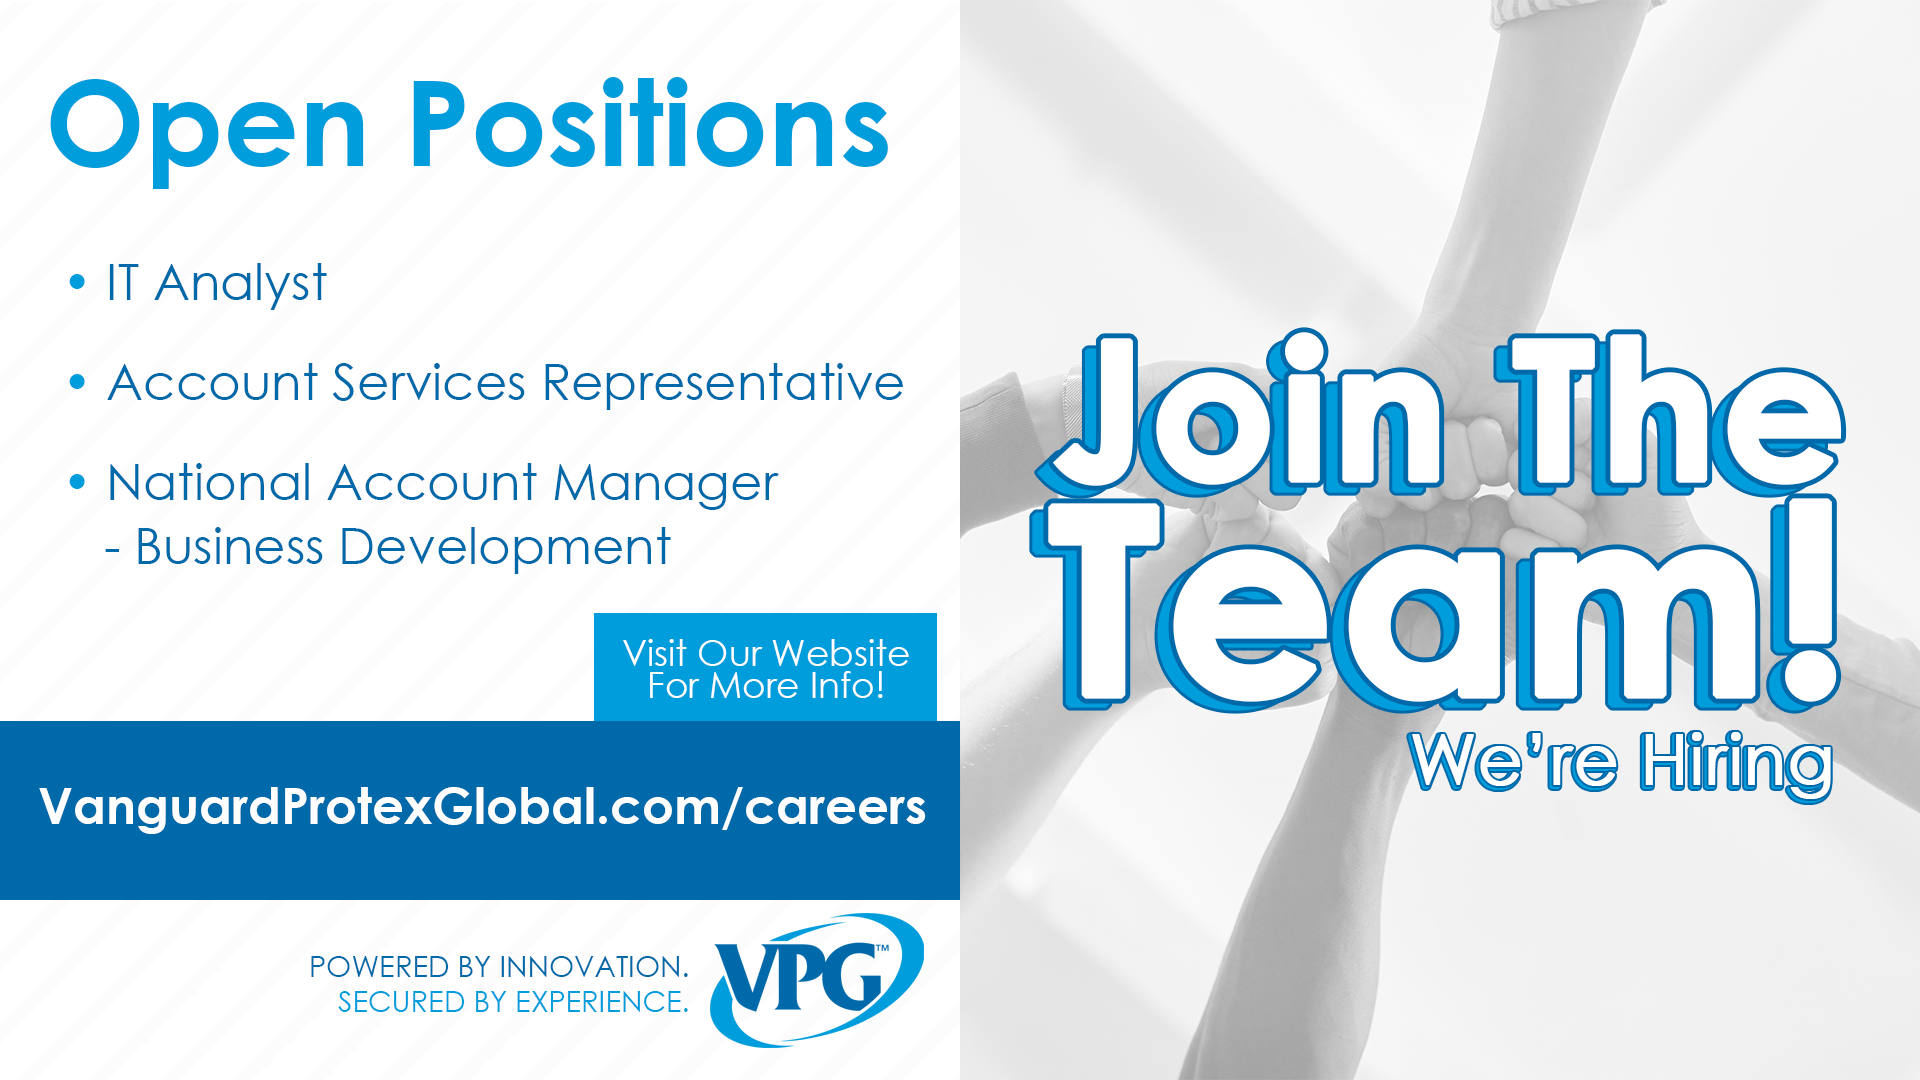 VPG is hiring!